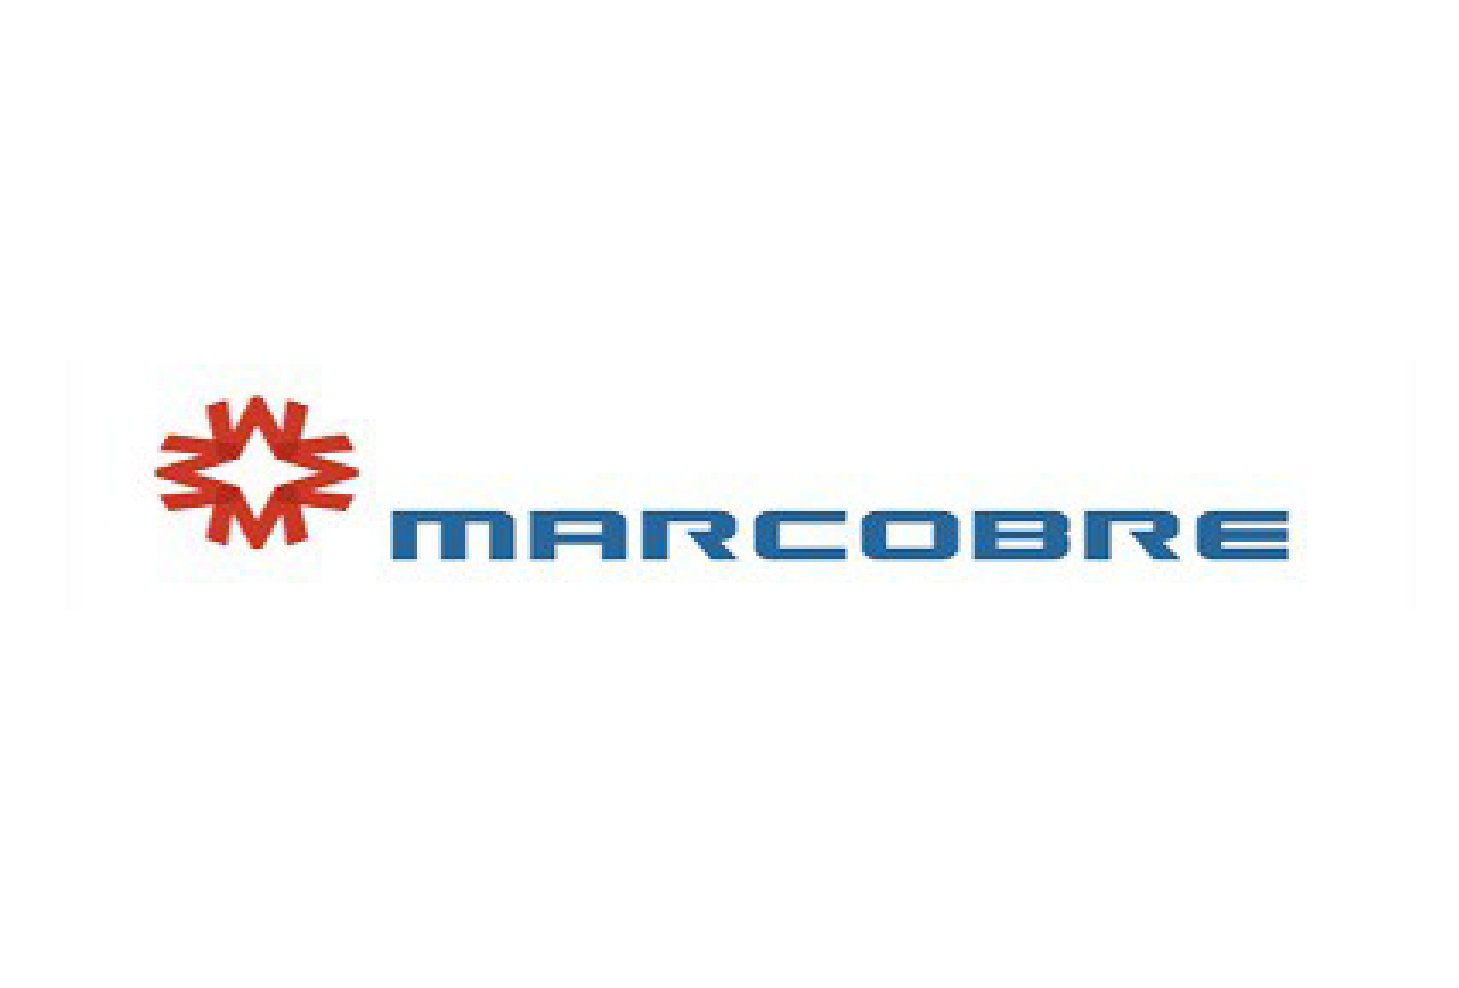 Logo Marcobre